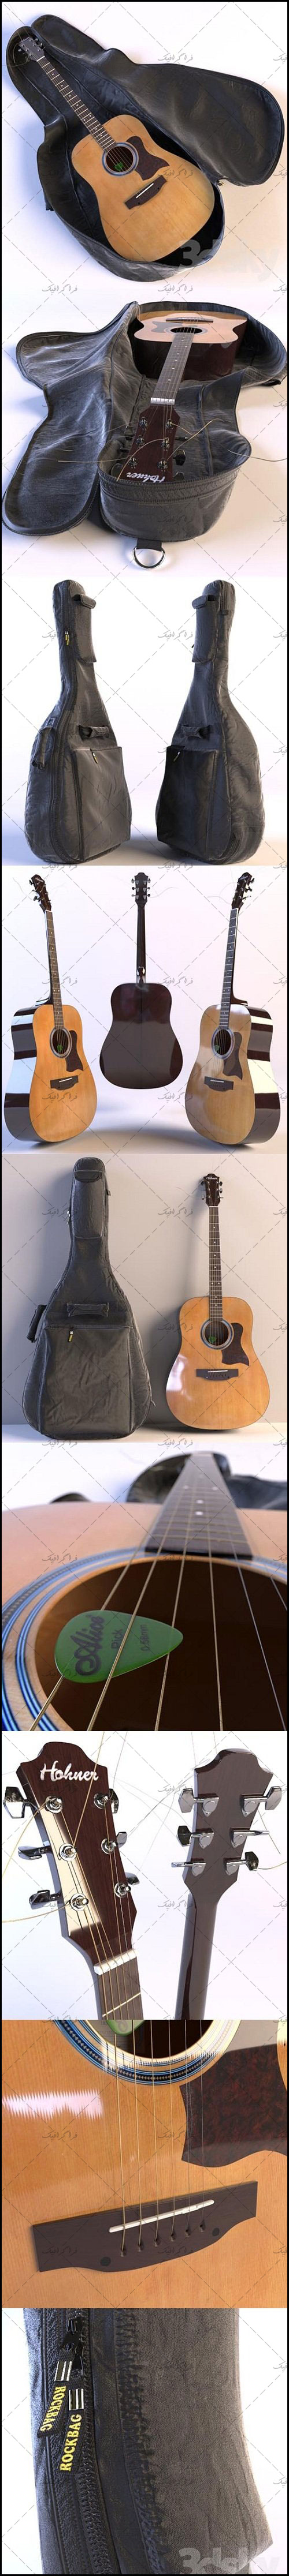 دانلود مدل سه بعدی گیتار با کیف